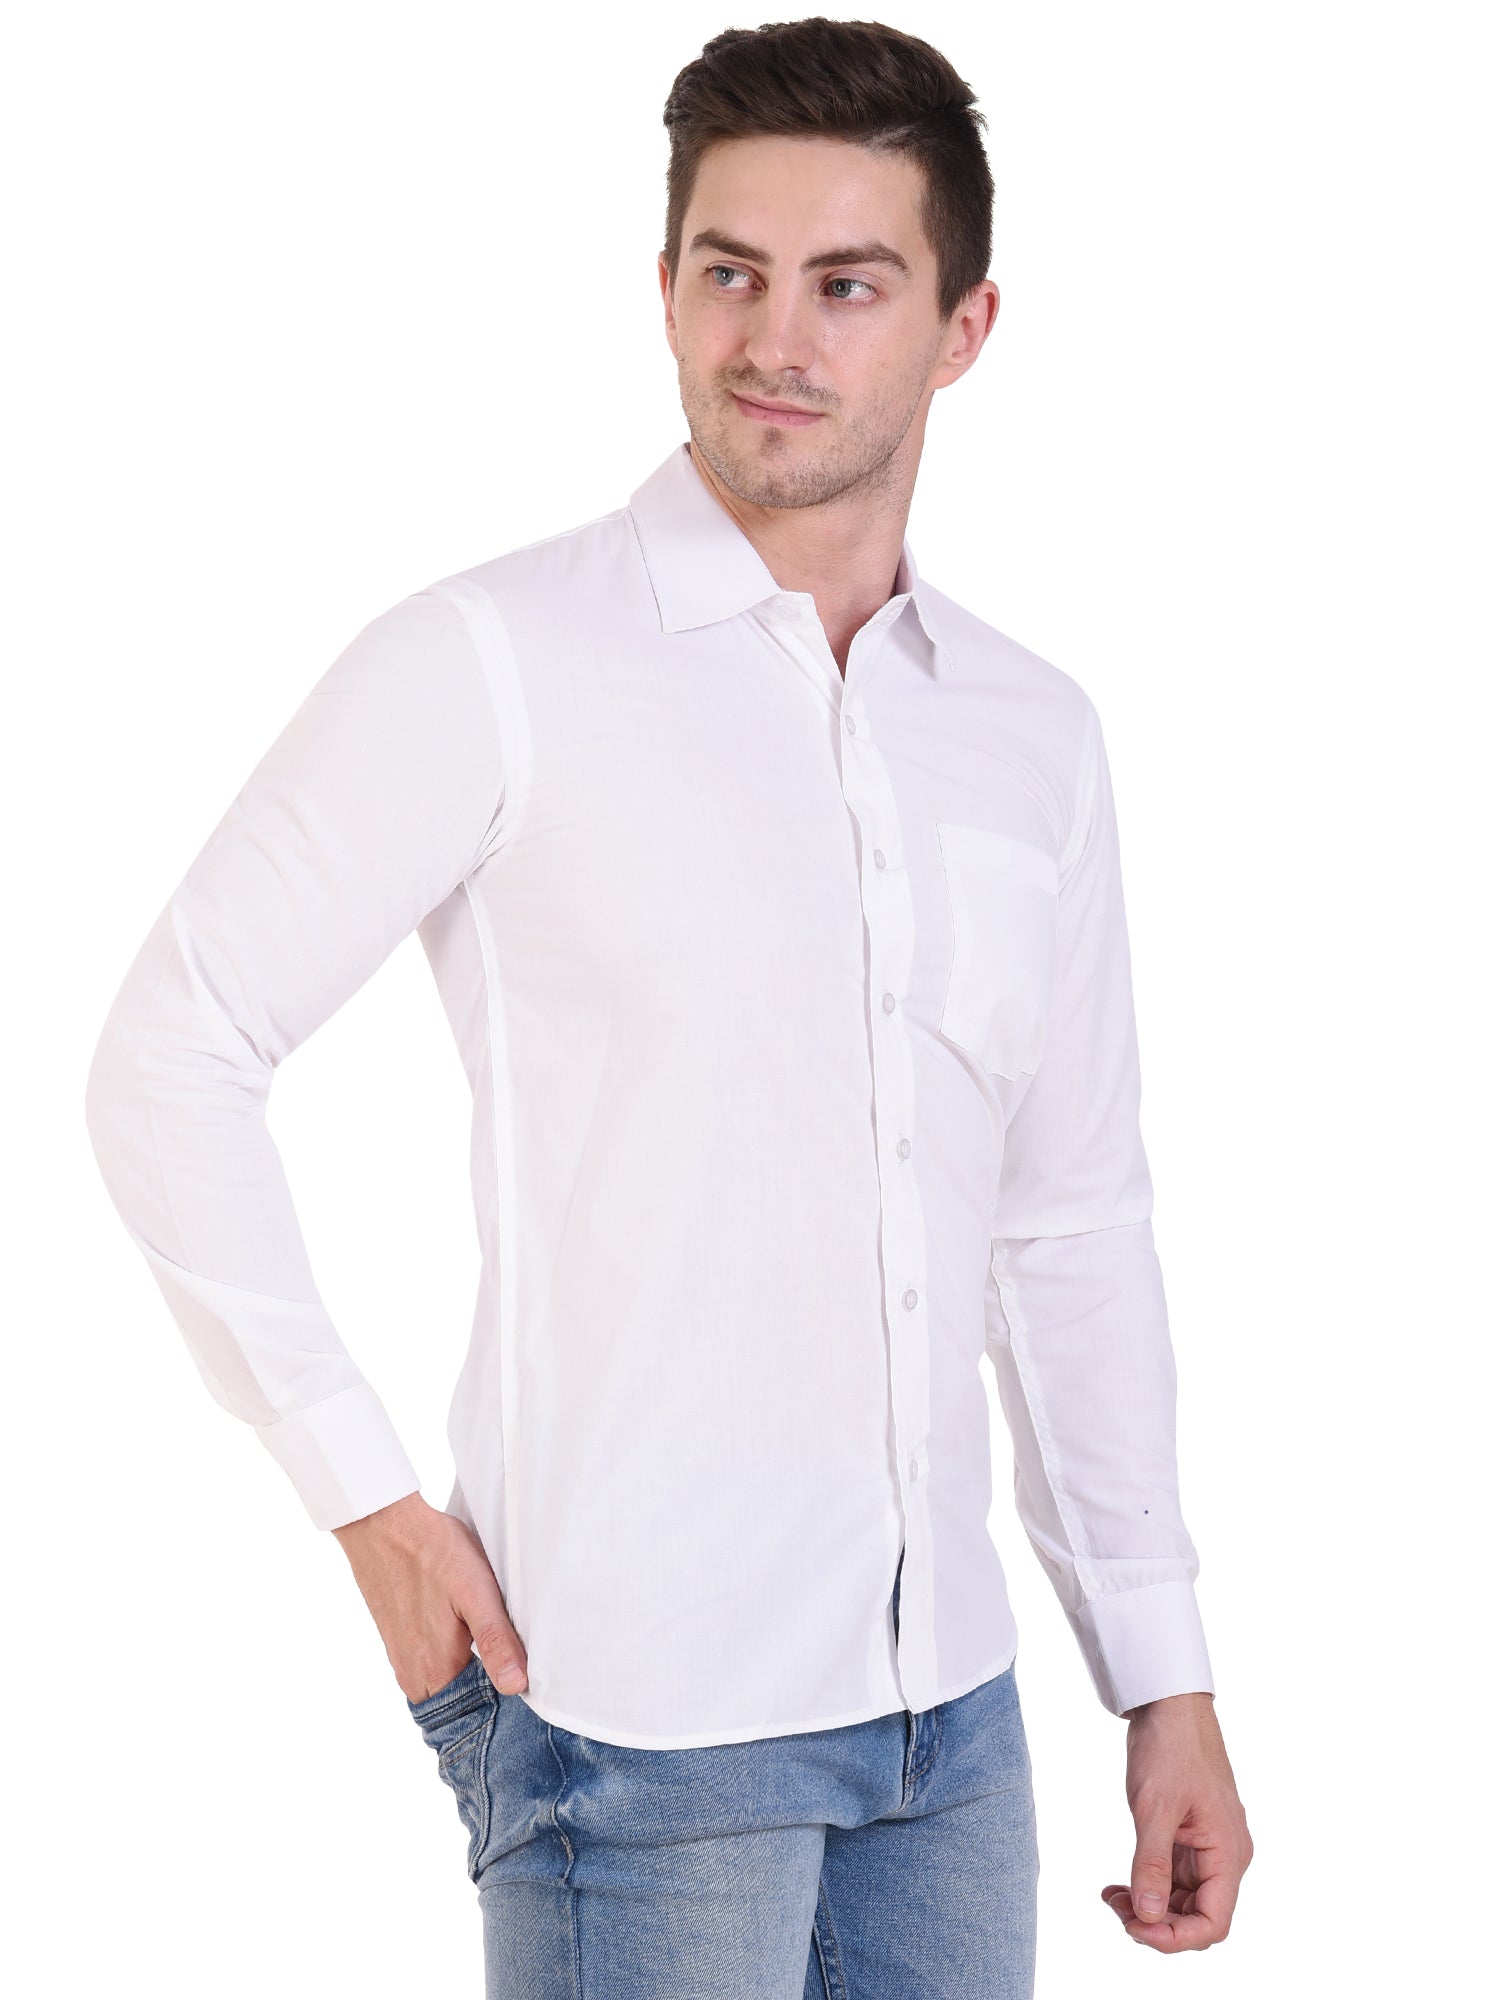 The Pure White Shirt – Autouniform.com